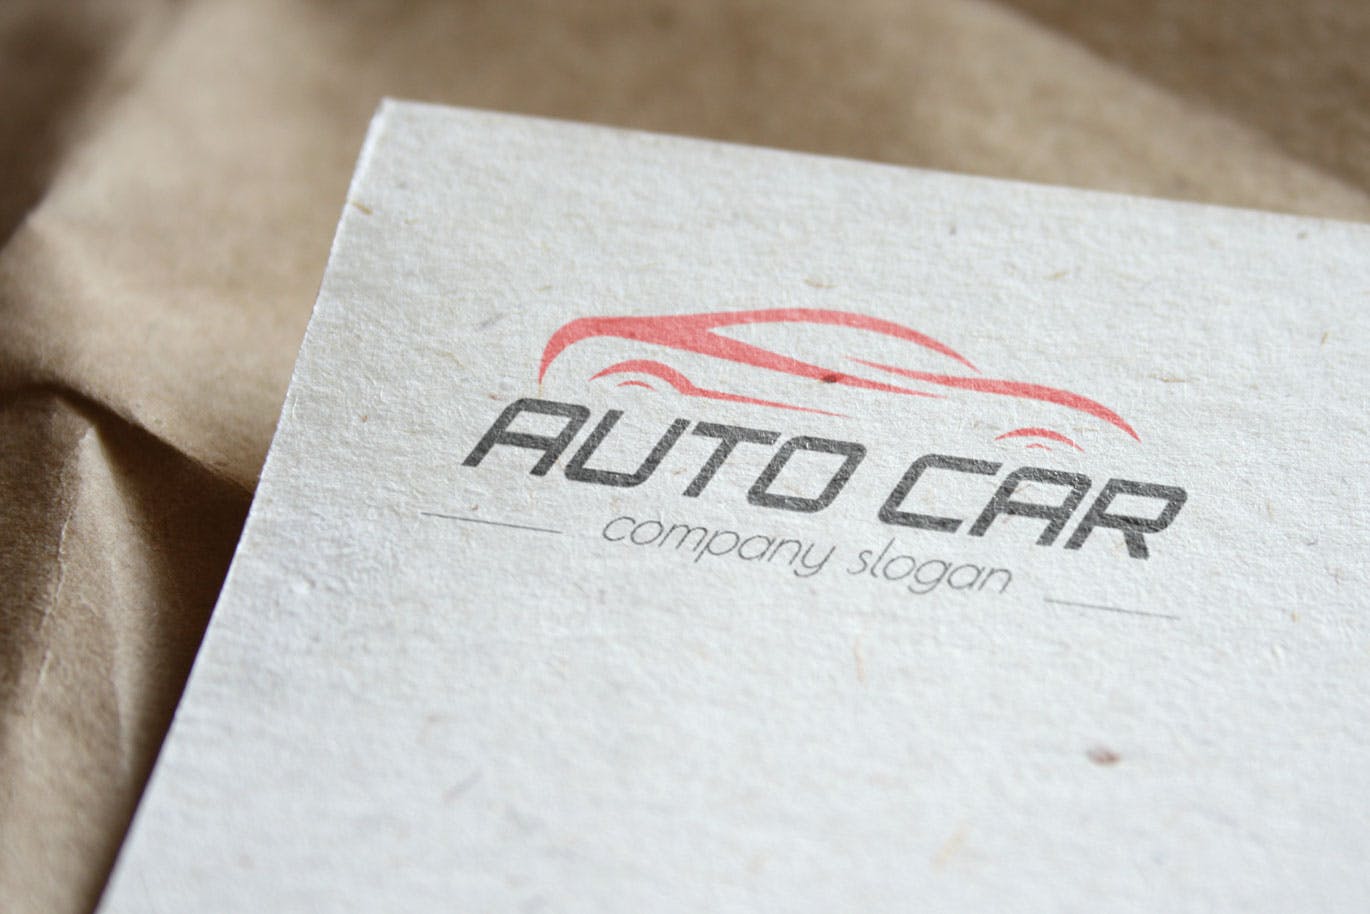 汽车相关企业品牌Logo设计非凡图库精选模板 Auto Car Business Logo Template插图(3)